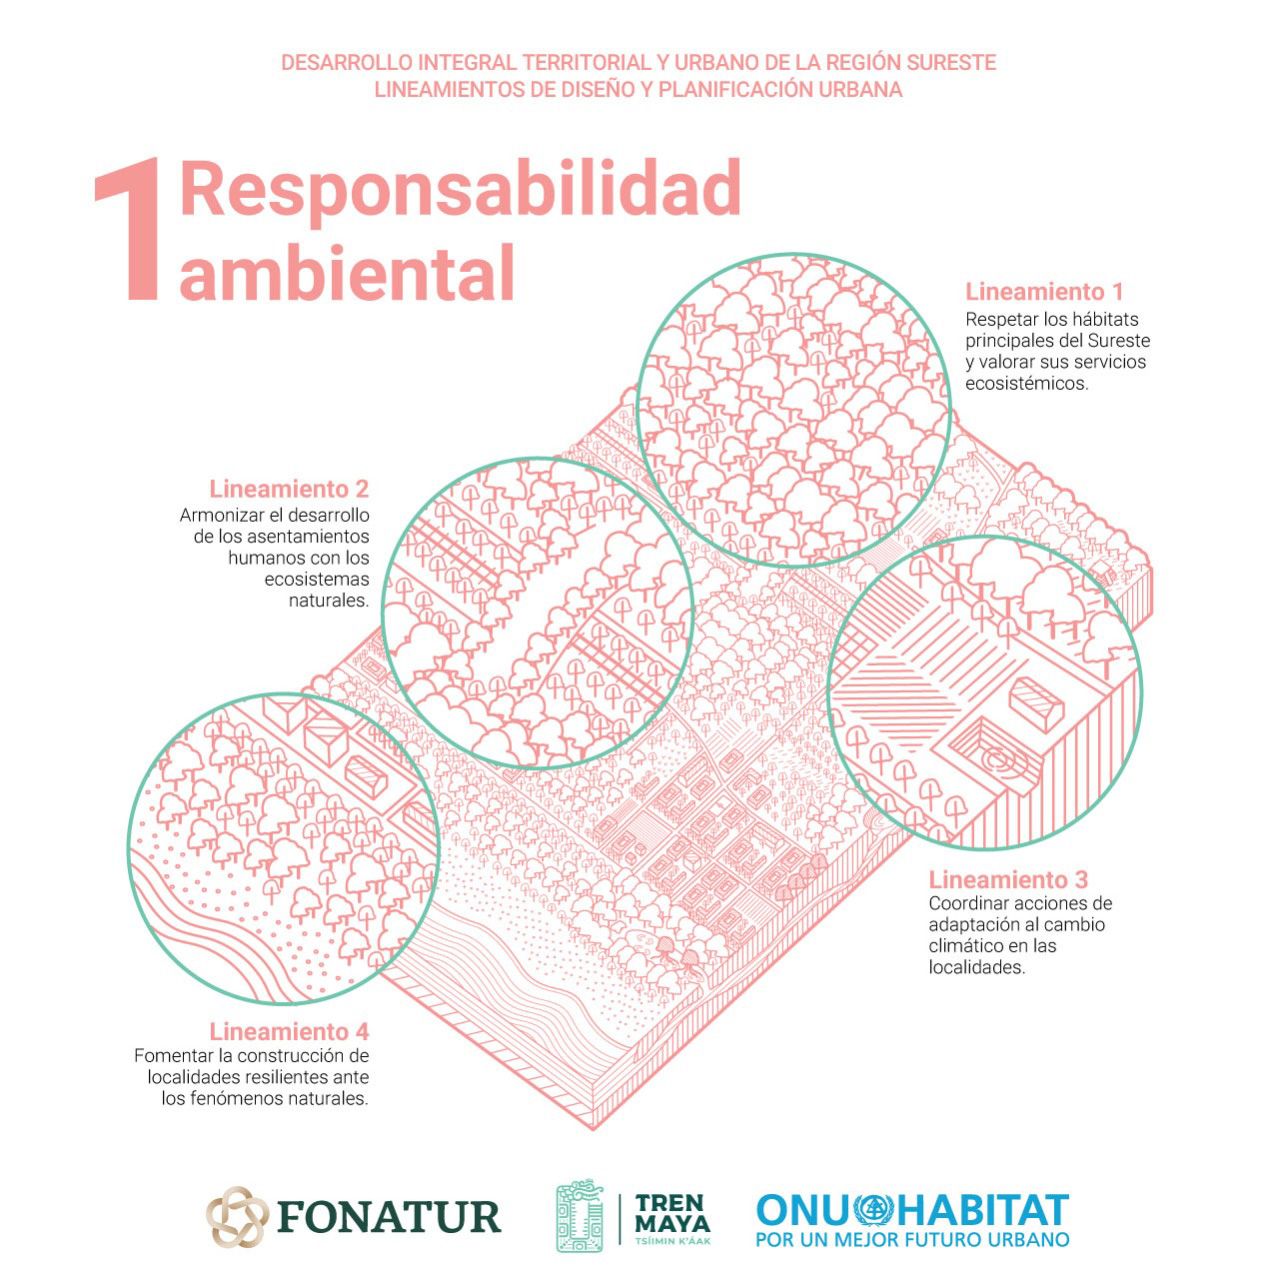 Propone ONU-Habitat lineamientos de diseño urbano para el sureste - 01 responsabilidad social